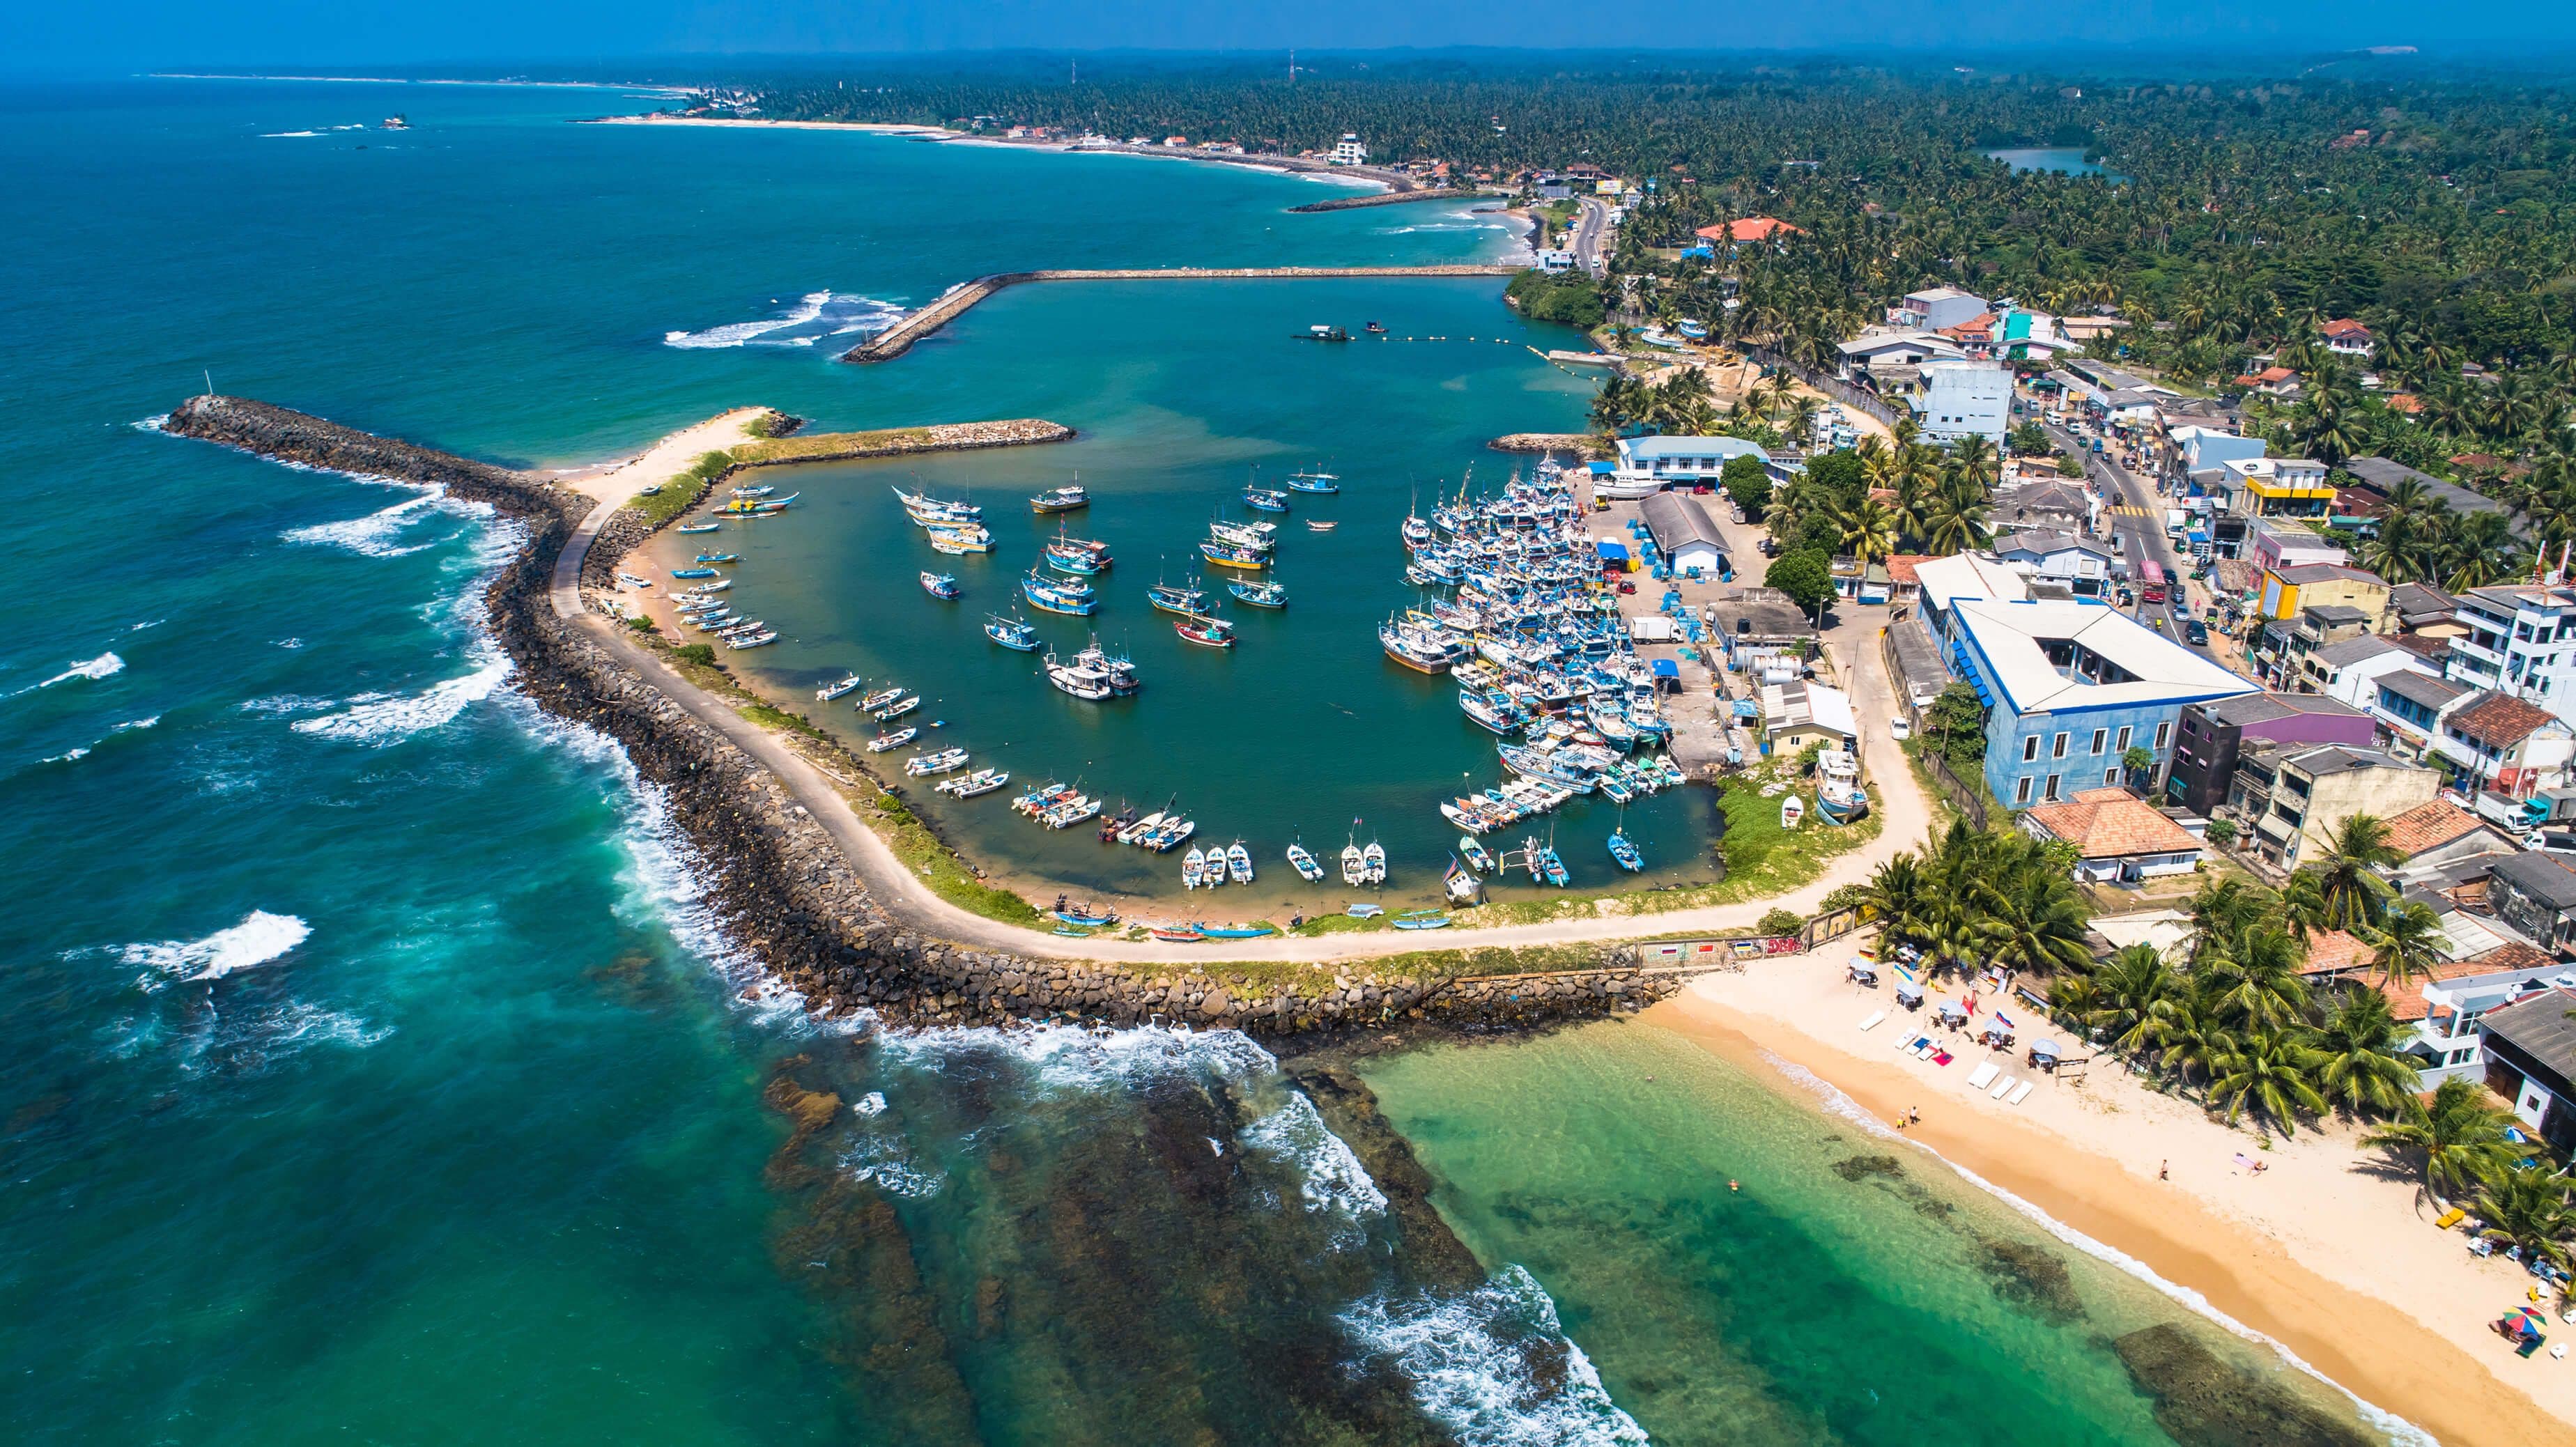 Beautiful aerial view of the Hikkaduwa beach, Sri Lanka.